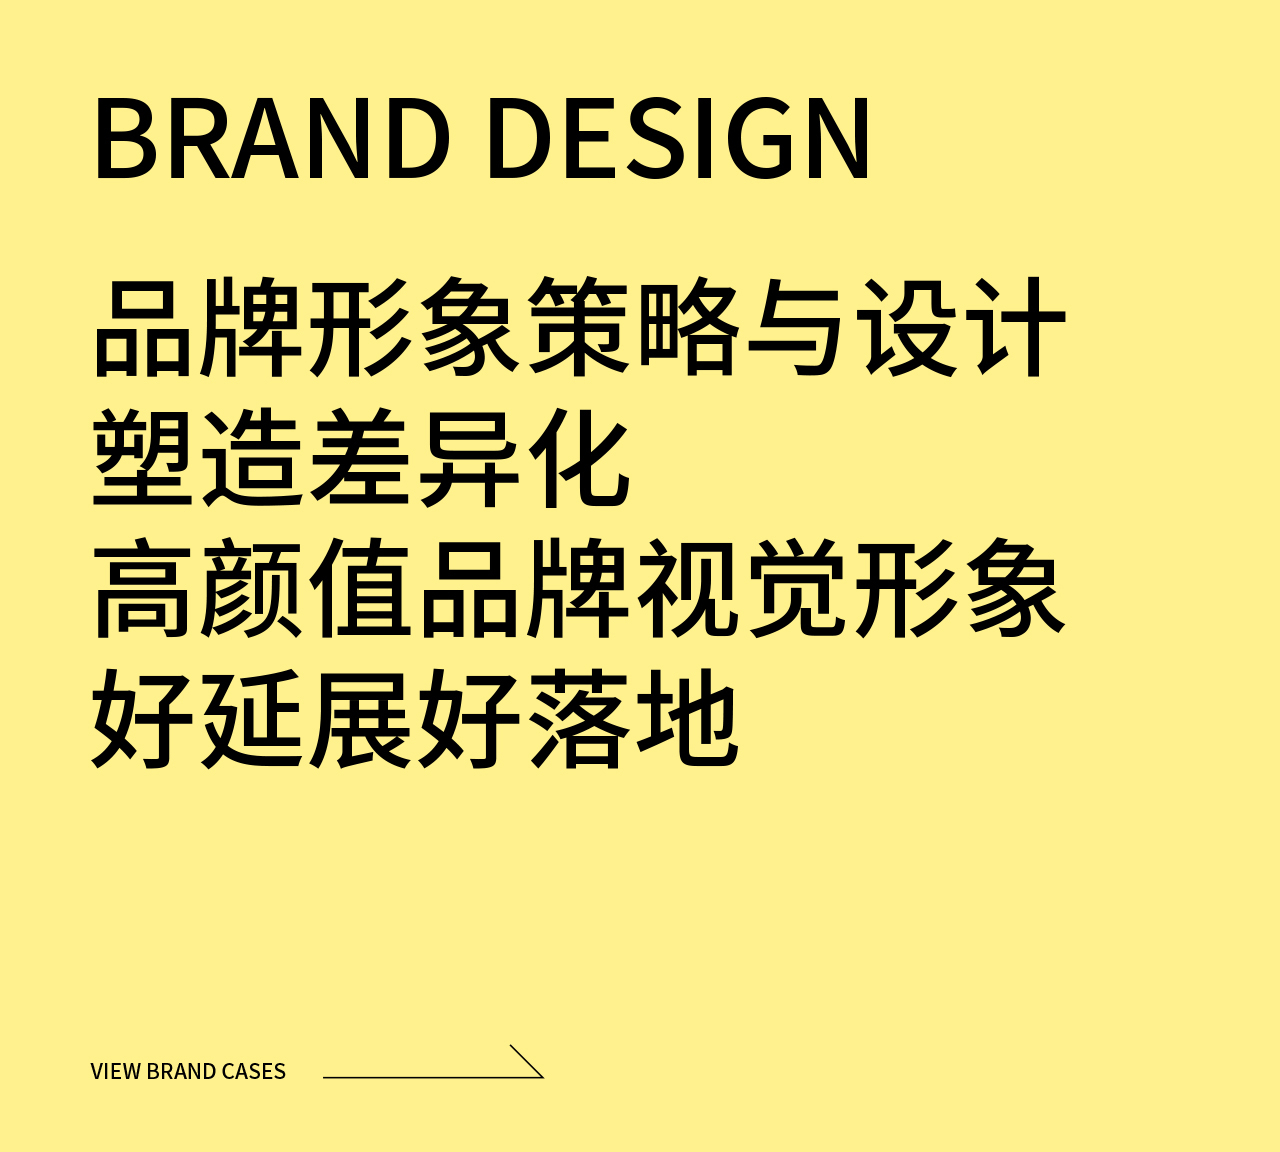 品牌调研分析品牌文化梳理、策略定位品牌命名、Slogan提炼品牌Logo、VI创建及升级设计